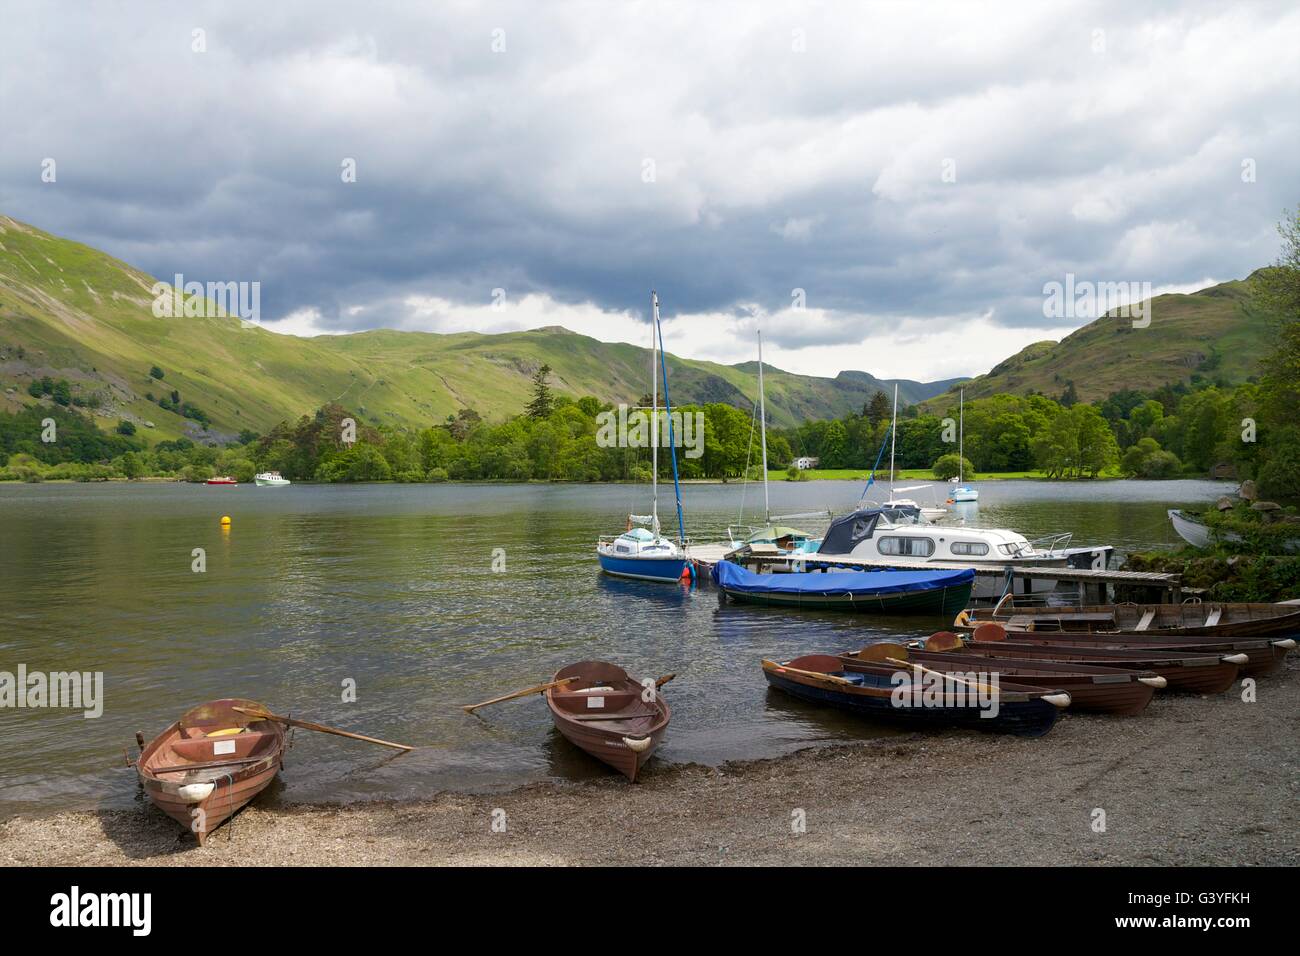 Location de bateaux à rames, Shap, Ullswater, Parc National de Lake District, Cumbria, England, UK, FR, DE L'Europe Banque D'Images